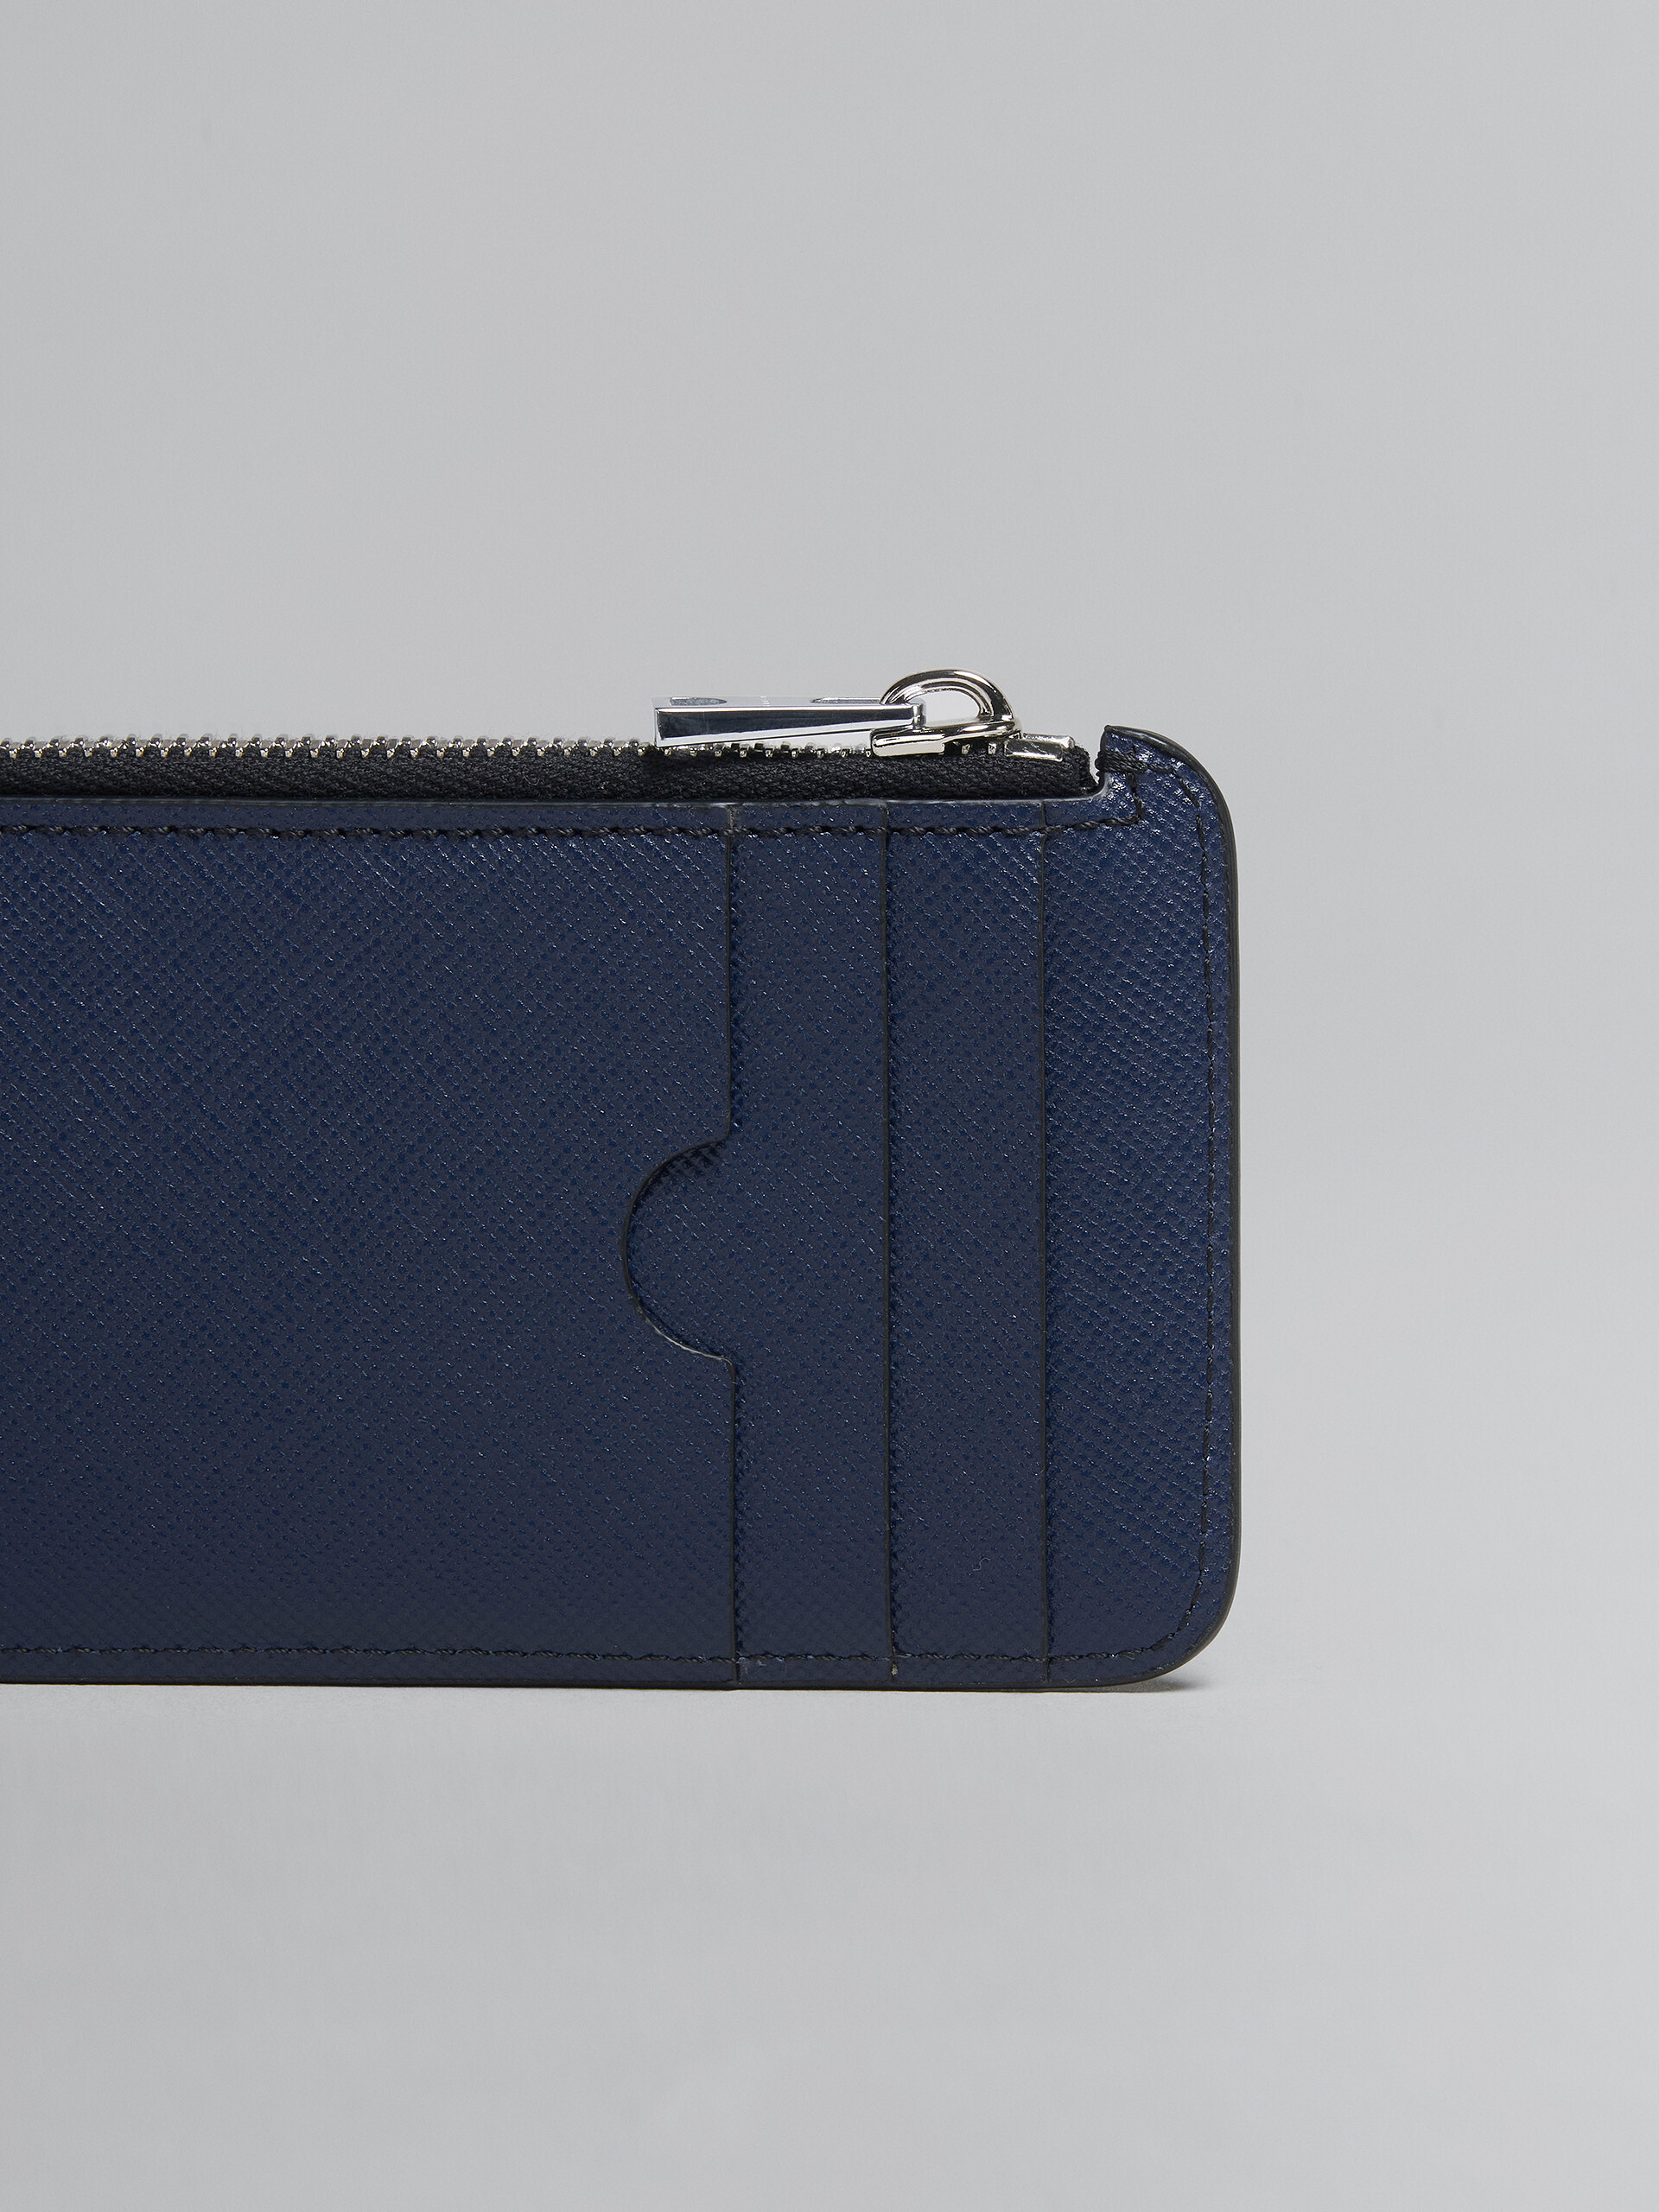 Kartenetui mit umlaufendem Reißverschluss aus Saffiano-Leder in Grau und Blau - Brieftaschen - Image 4